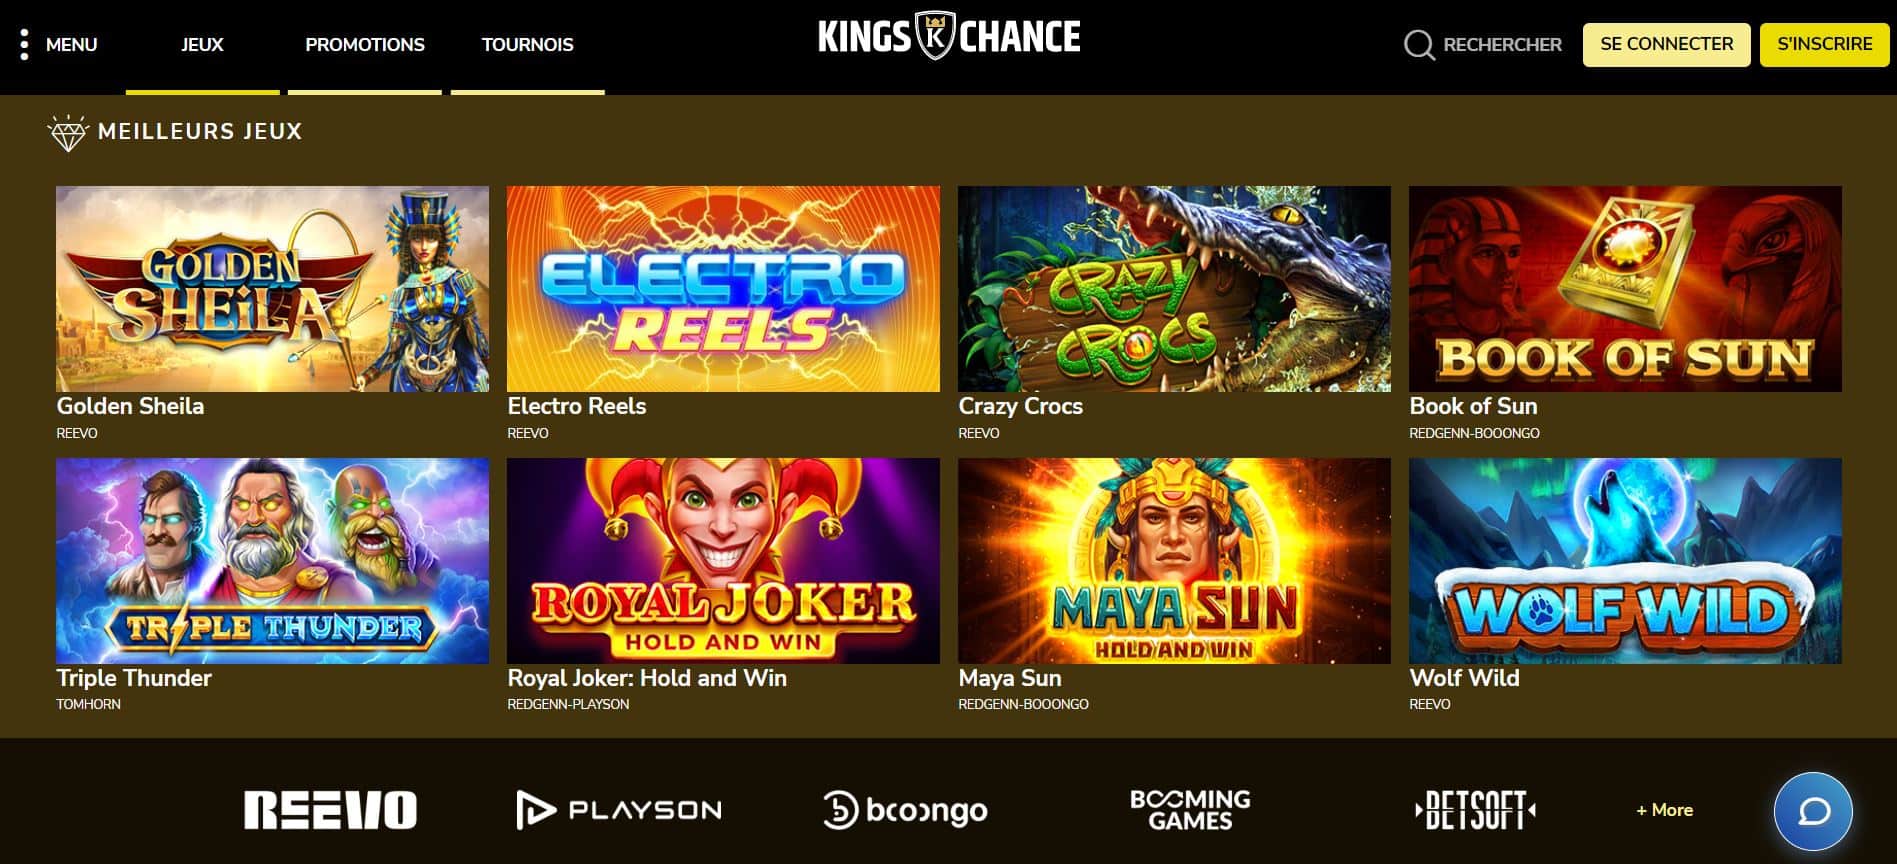 Kings Chance - Jeux - Casino carte de débit